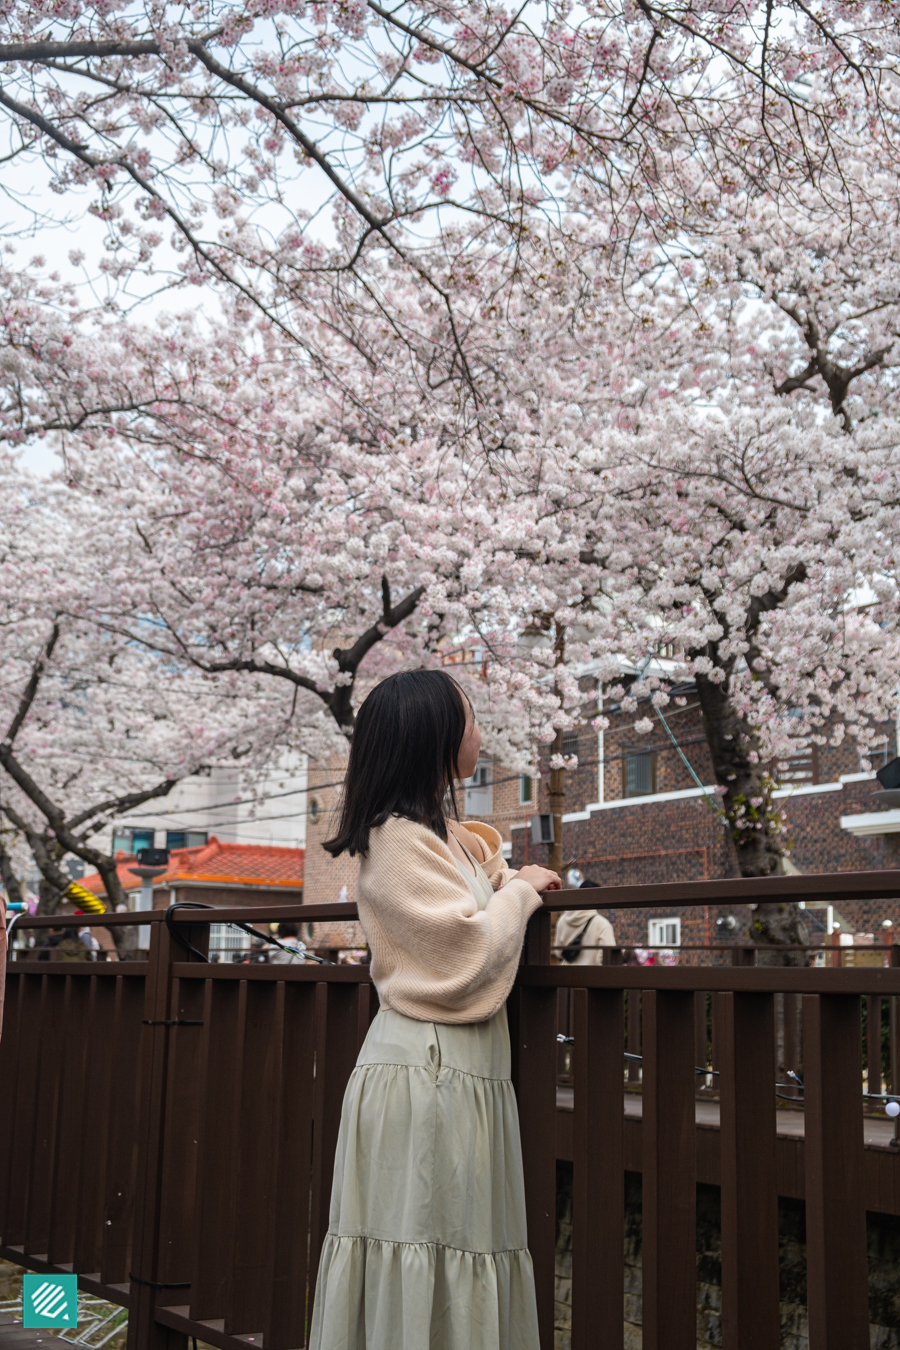 Cherry Blossoms in Yeojwa Stream, Korea